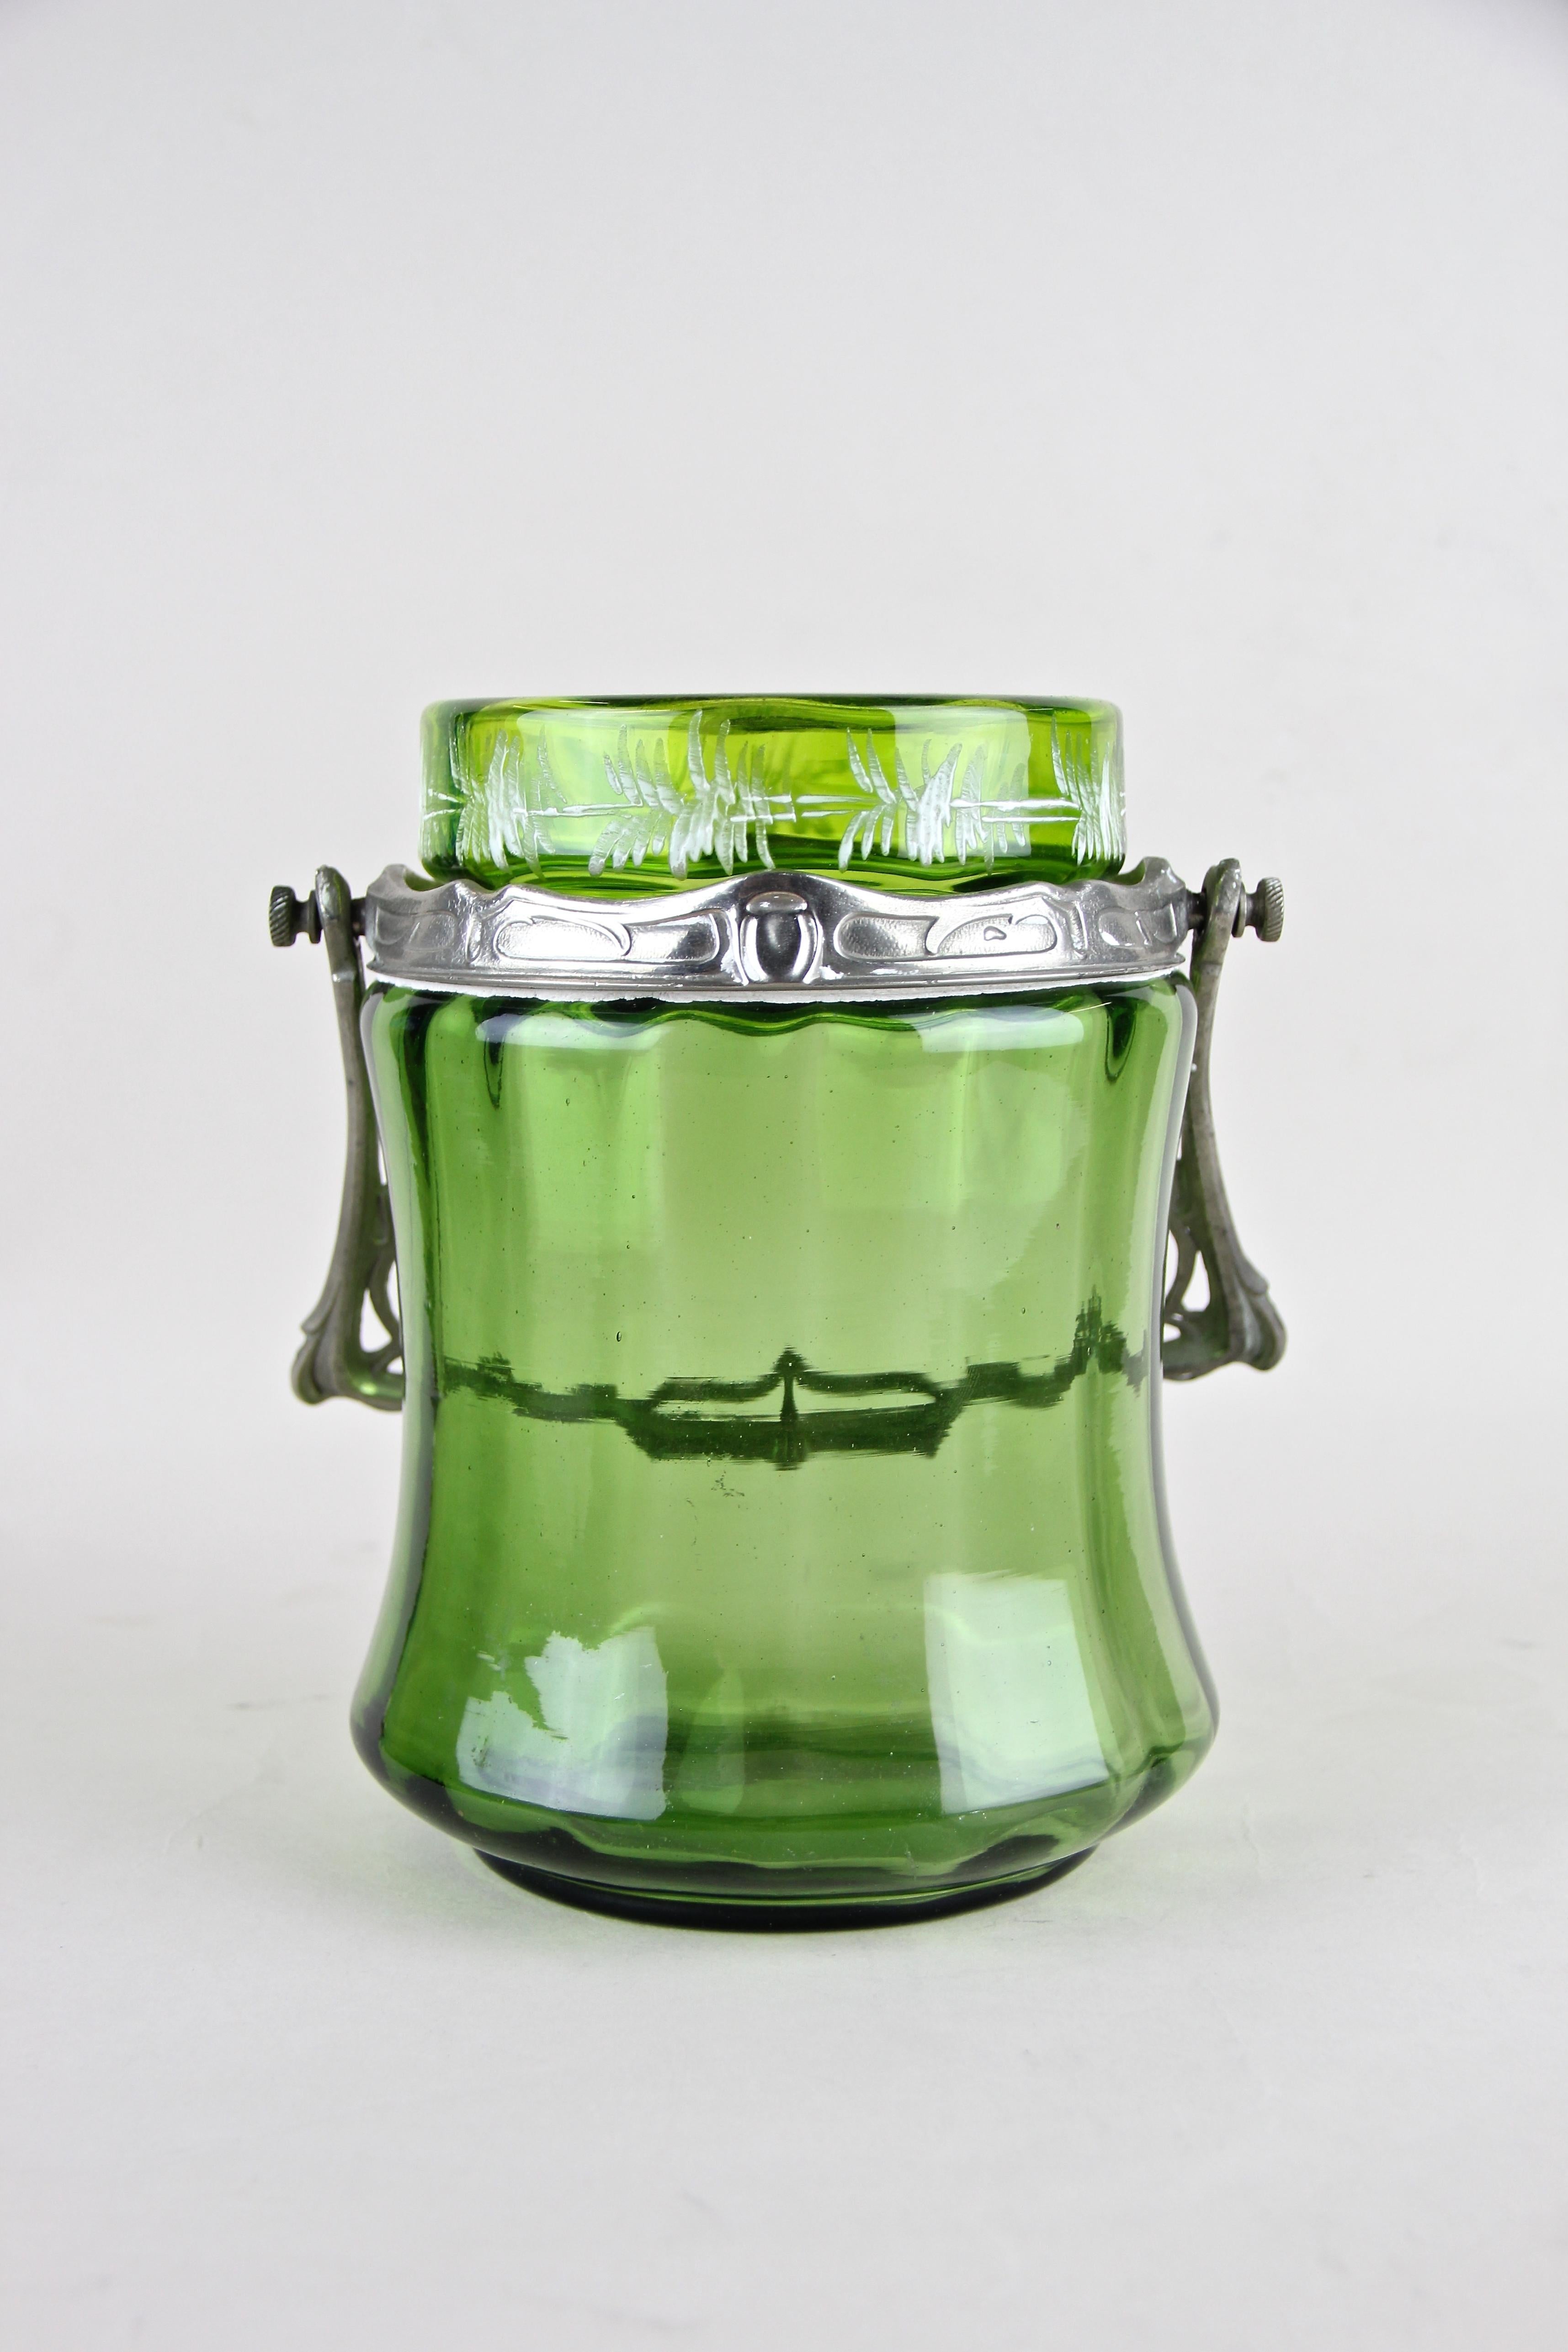 Appliqué Bohemian Glass Jar with Lid Art Nouveau, CZ, circa 1900